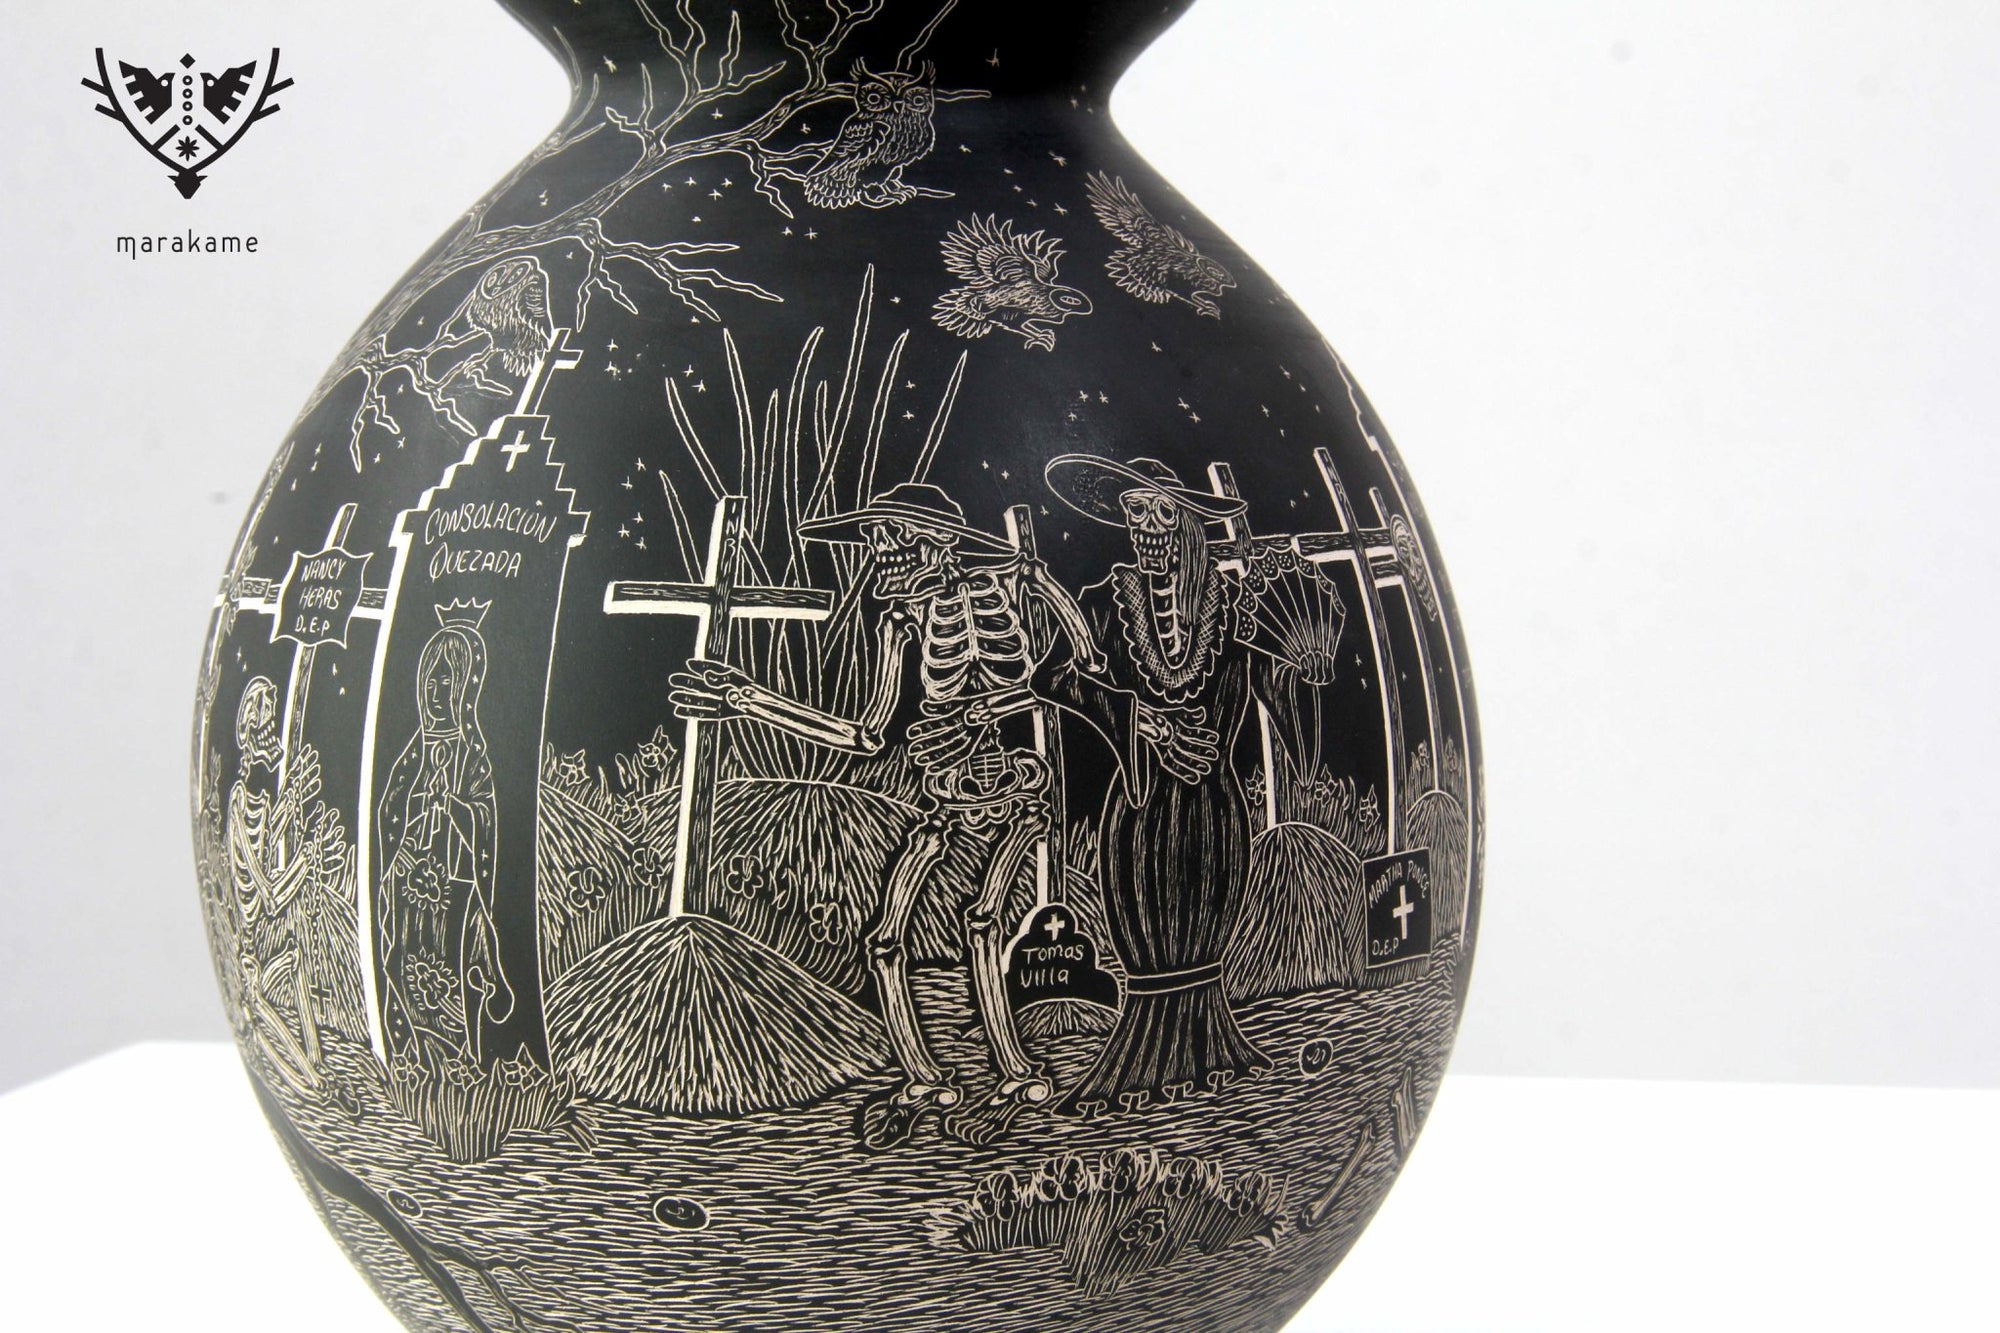 マタ・オルティスの陶器 - 死者の日 - 夜のパンテオン - ウイチョル族の芸術 - マラカメ